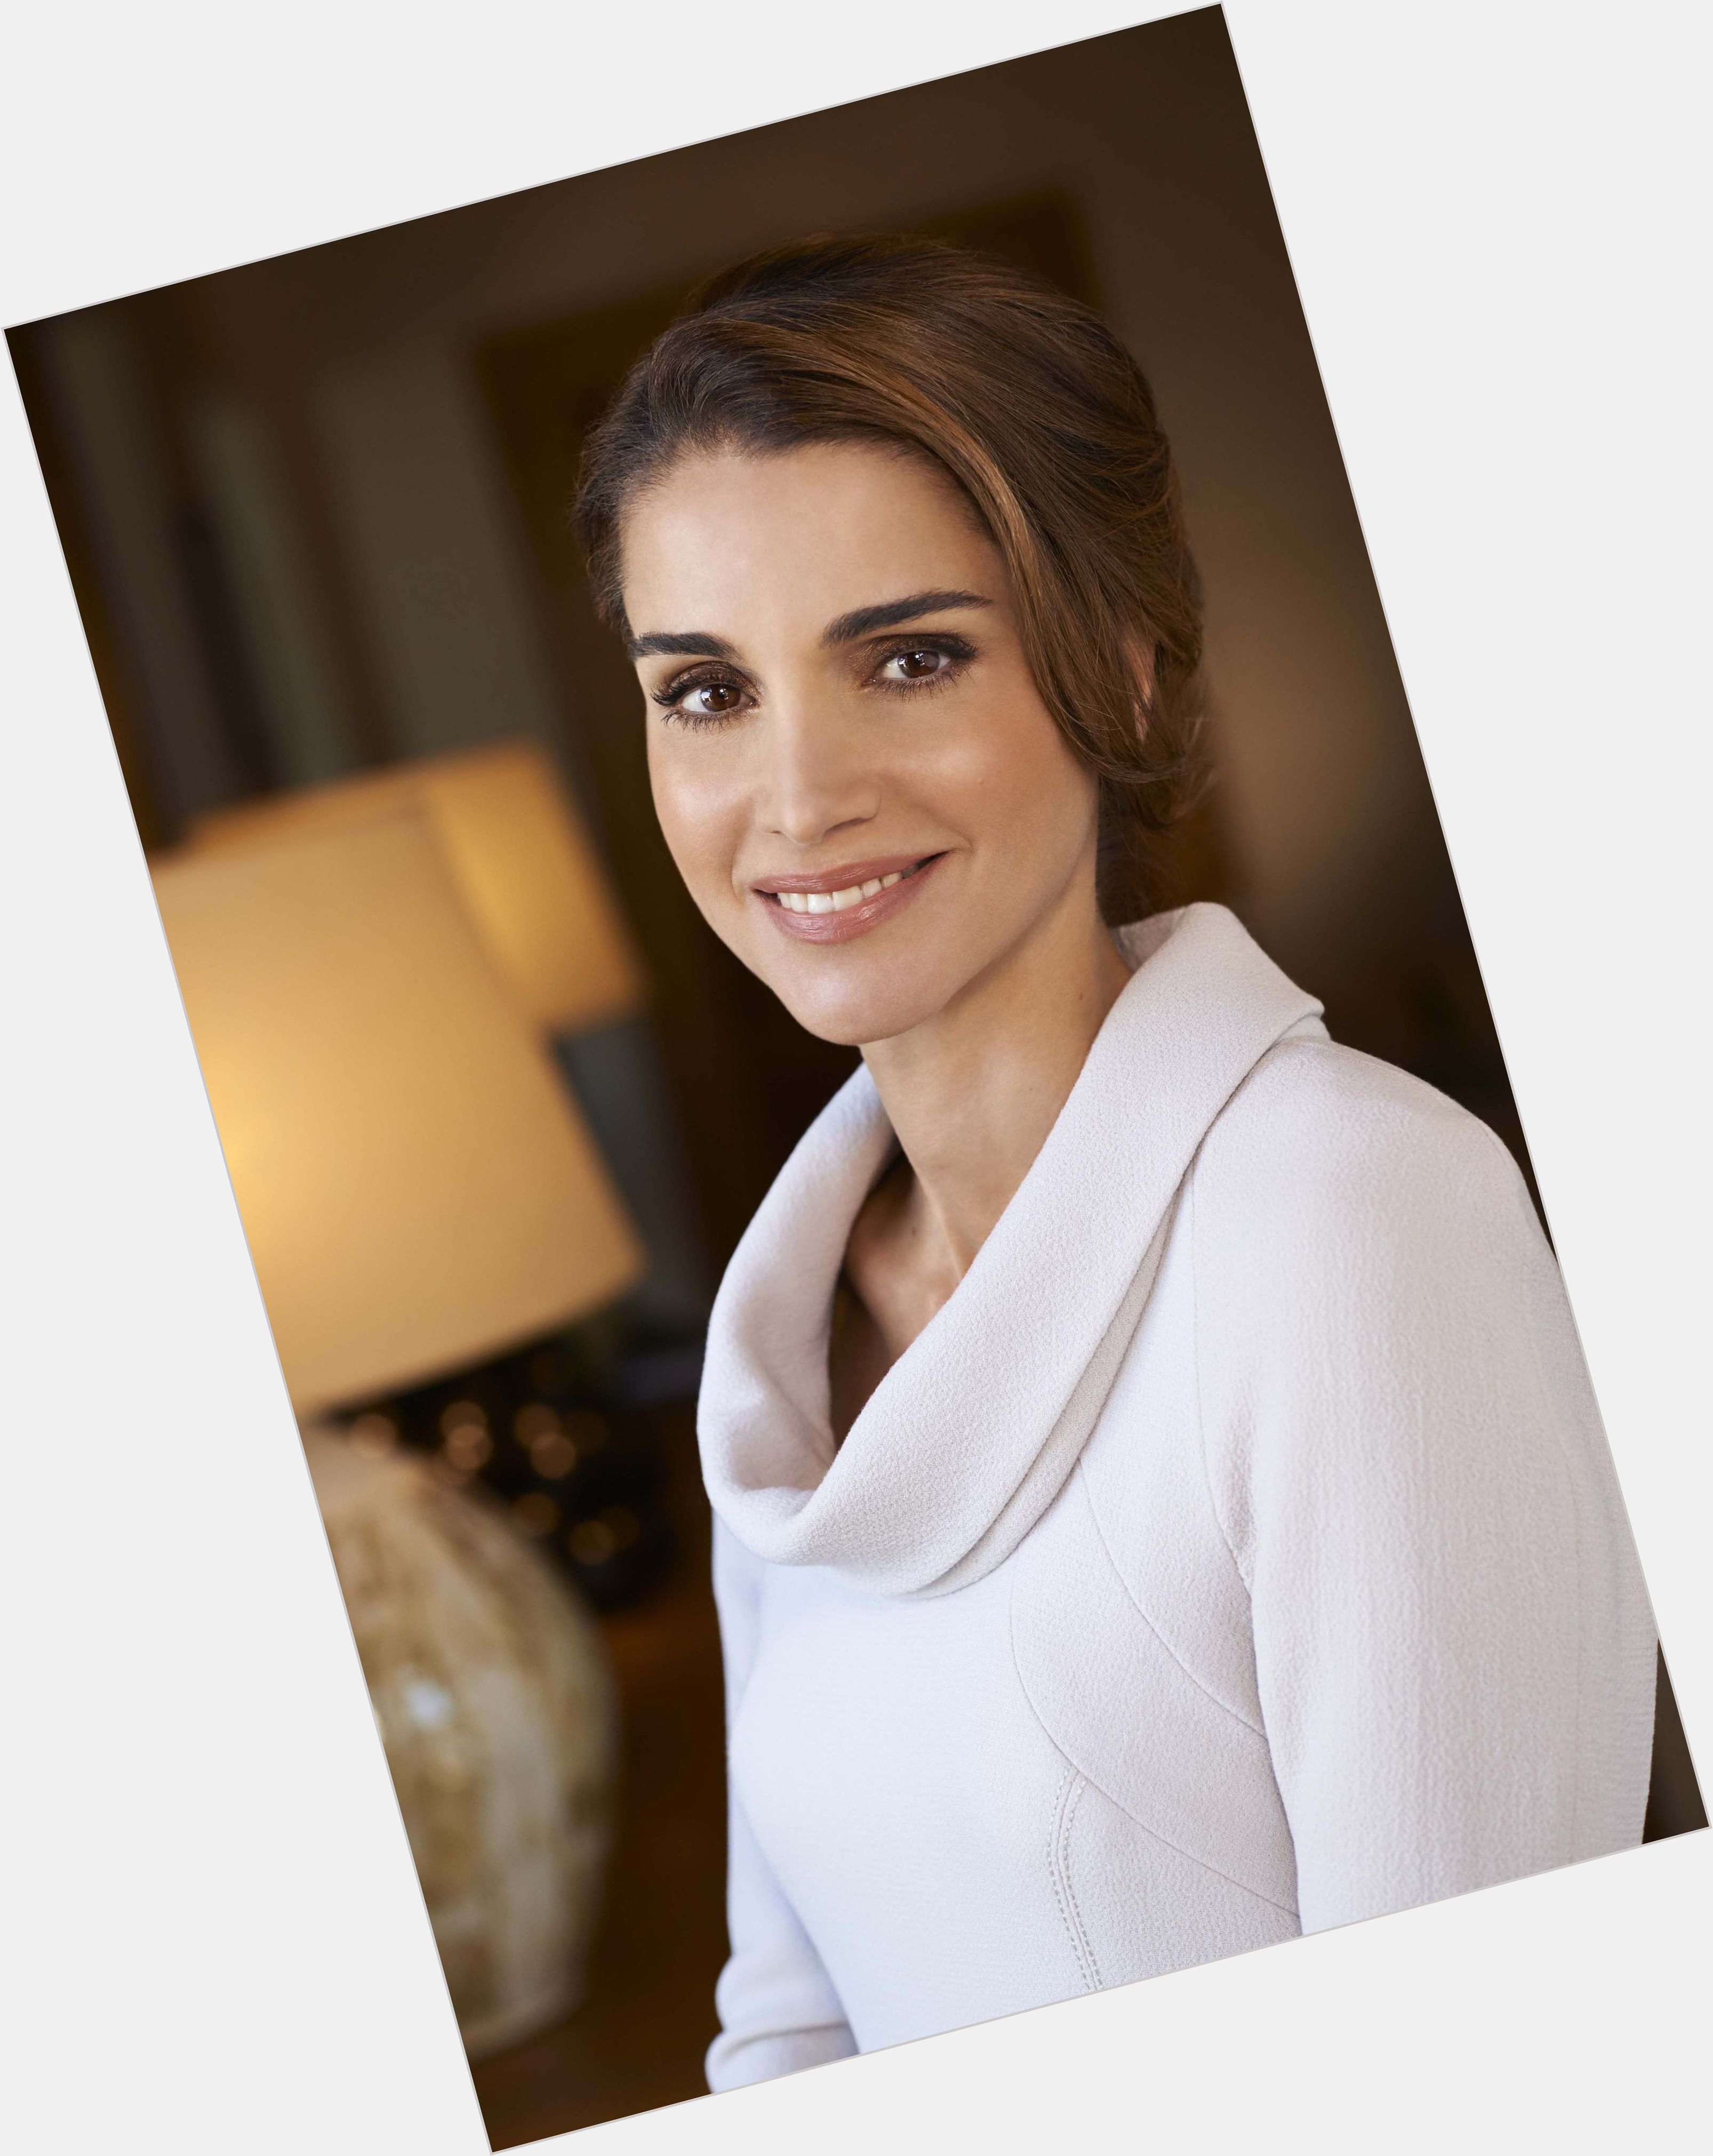 Queen Rania of Jordan dating 2